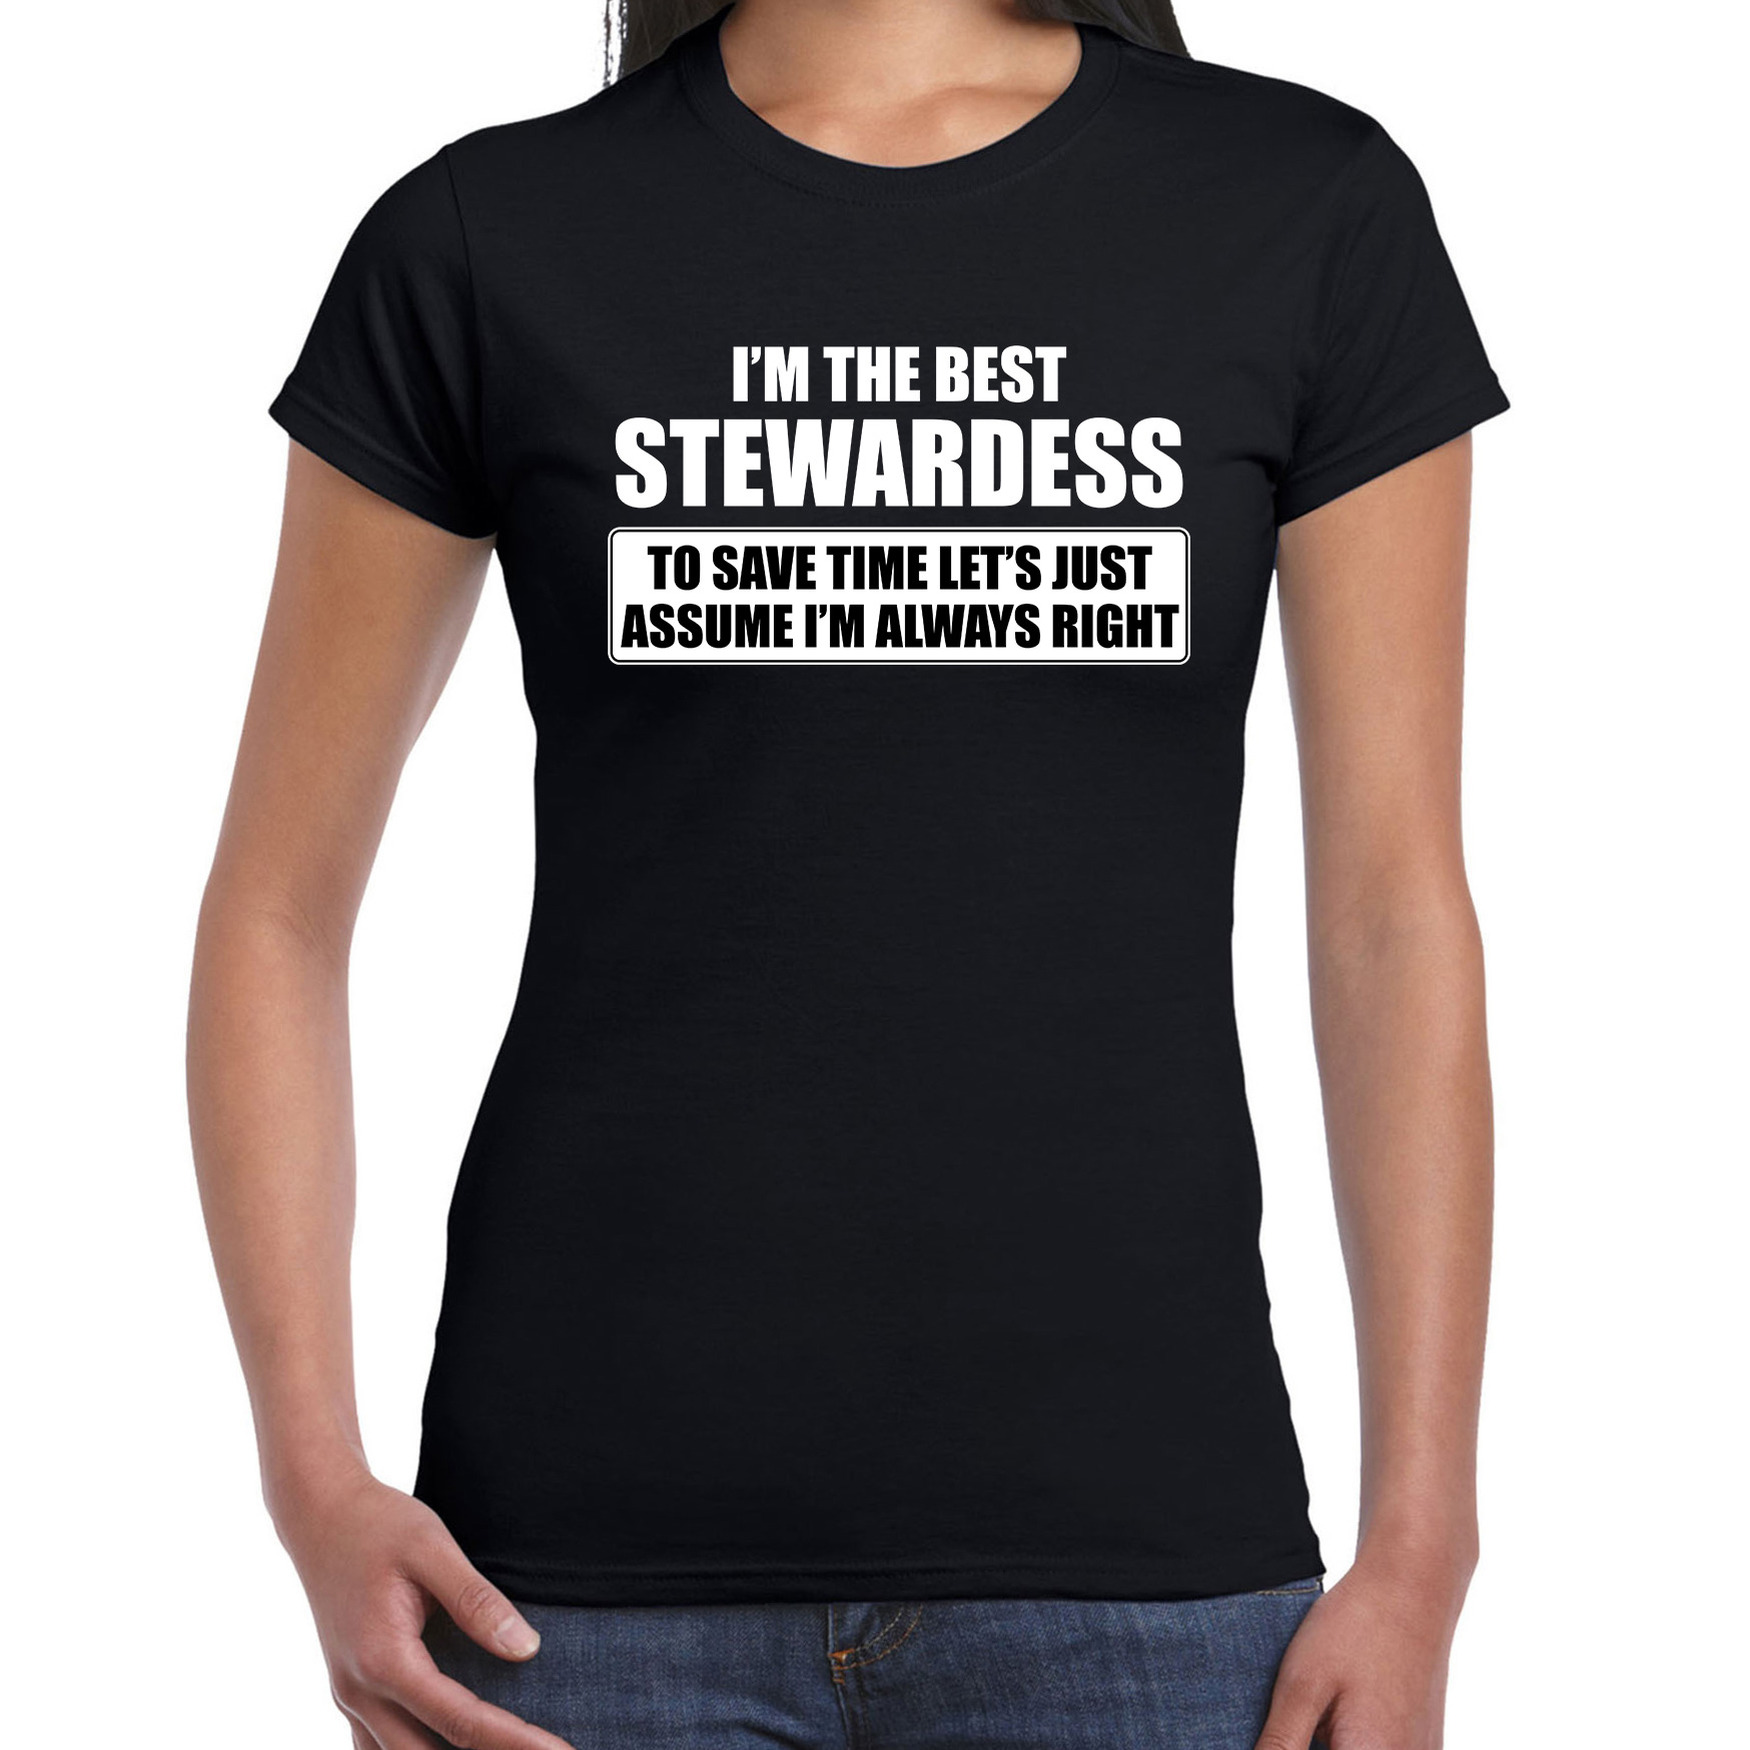 I'm the best stewardess t-shirt zwart dames De beste stewardess cadeau